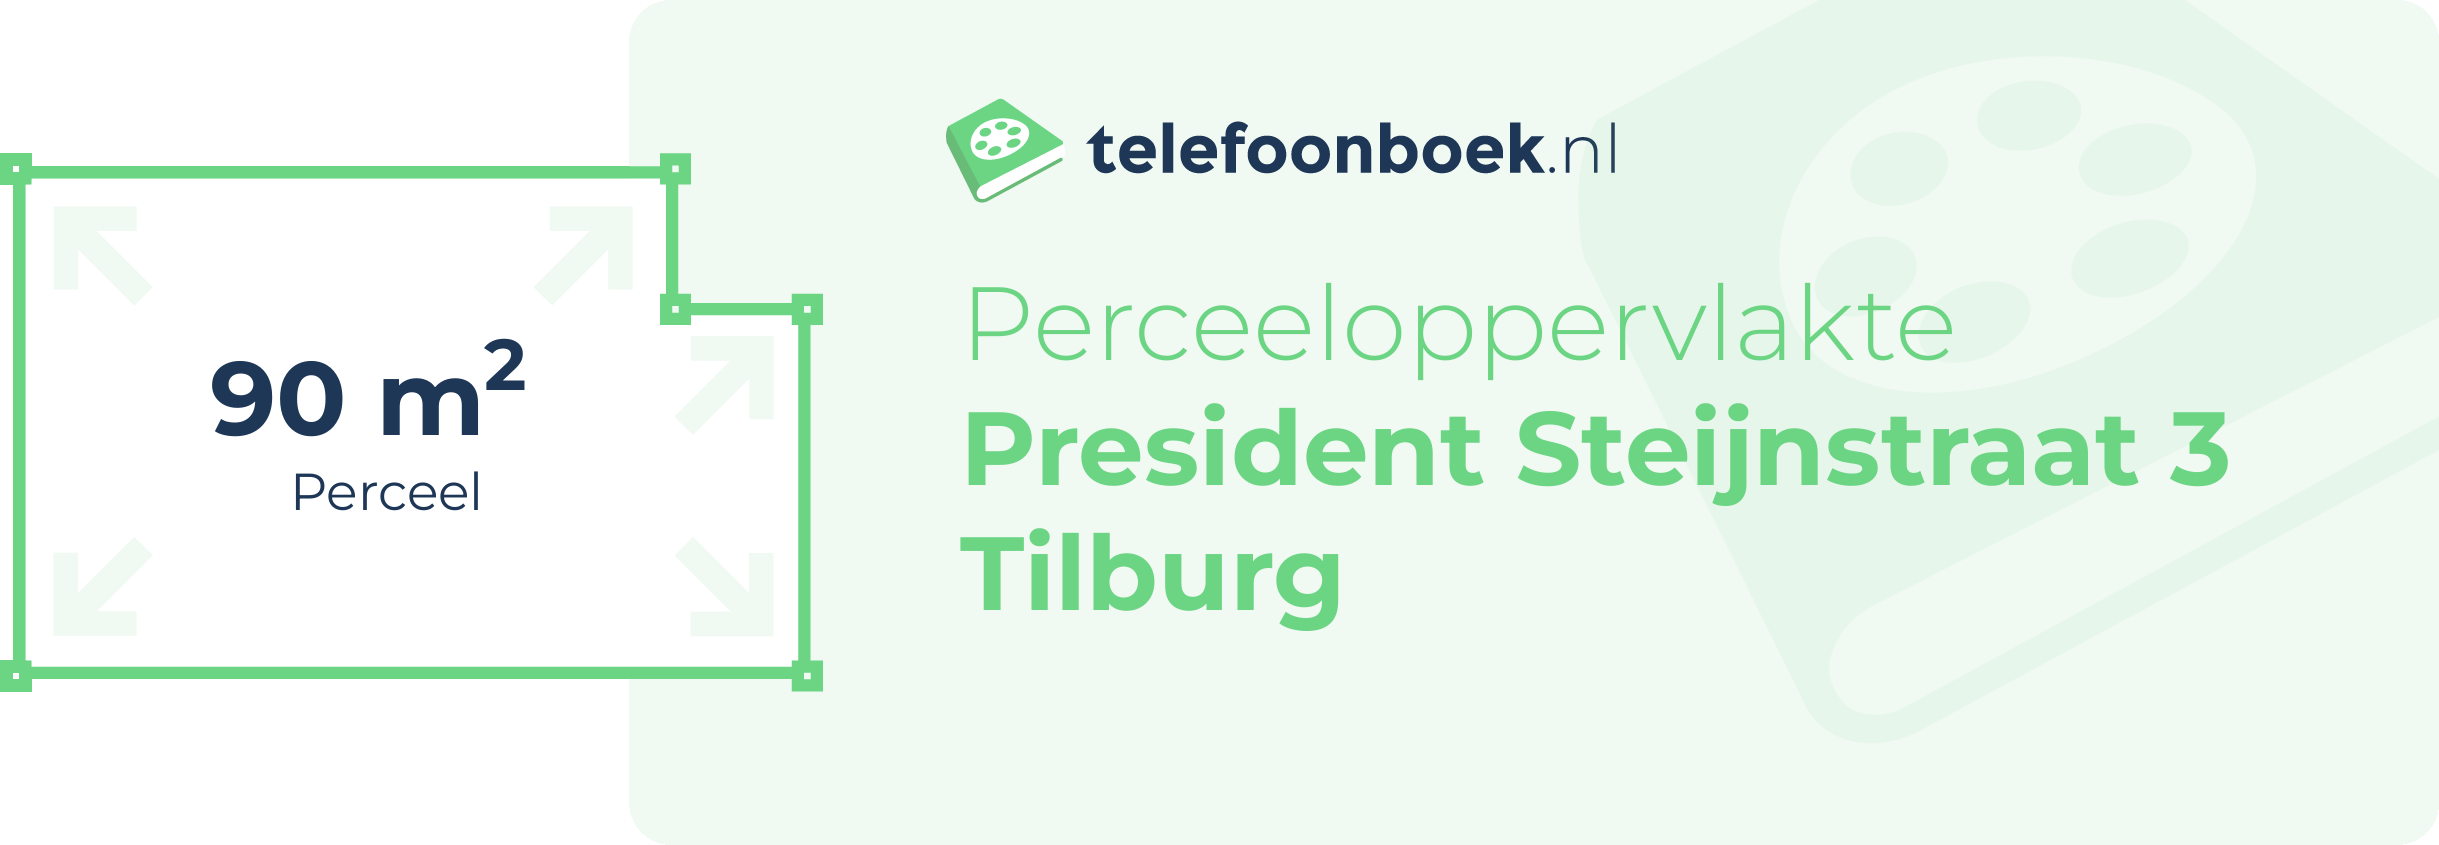 Perceeloppervlakte President Steijnstraat 3 Tilburg